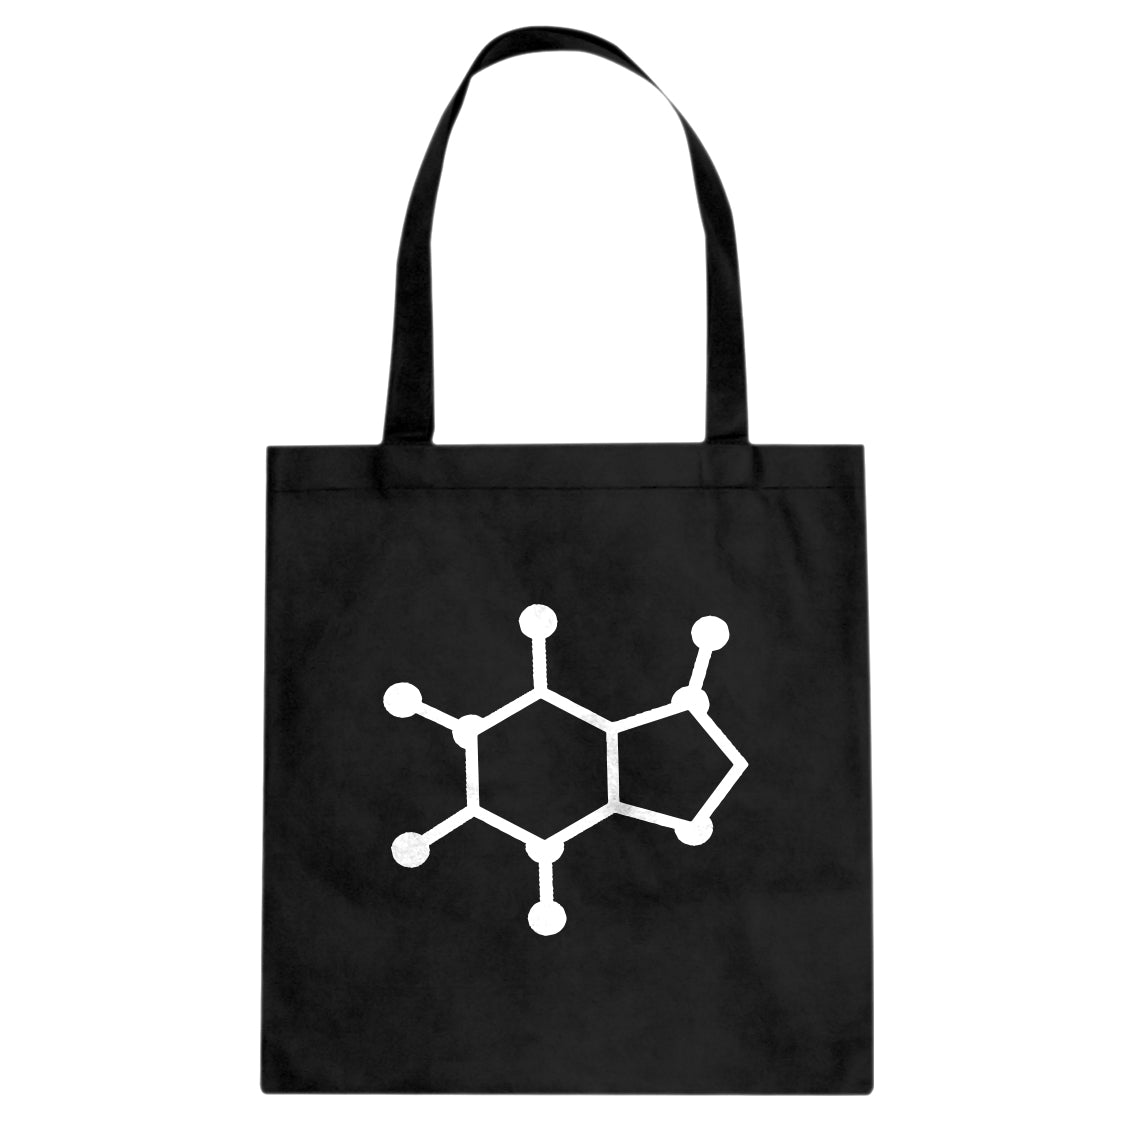 Tote Caffeine Molecule Canvas Tote Bag